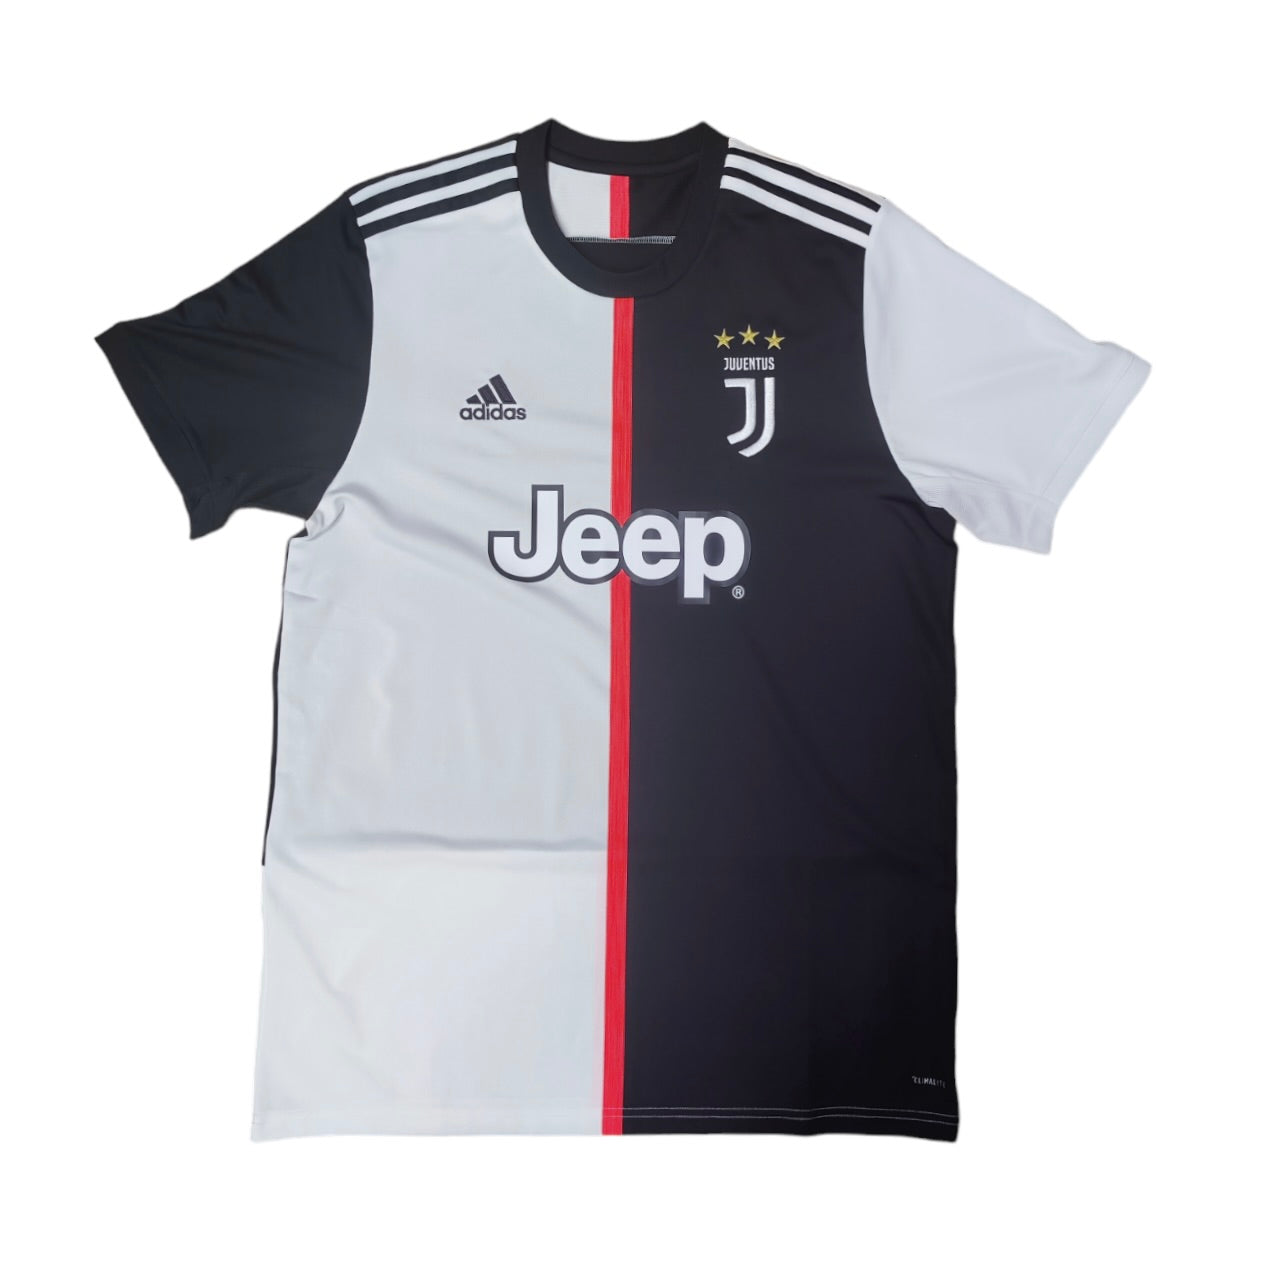 Adidas Juventus 2019/2020 Home Jersey